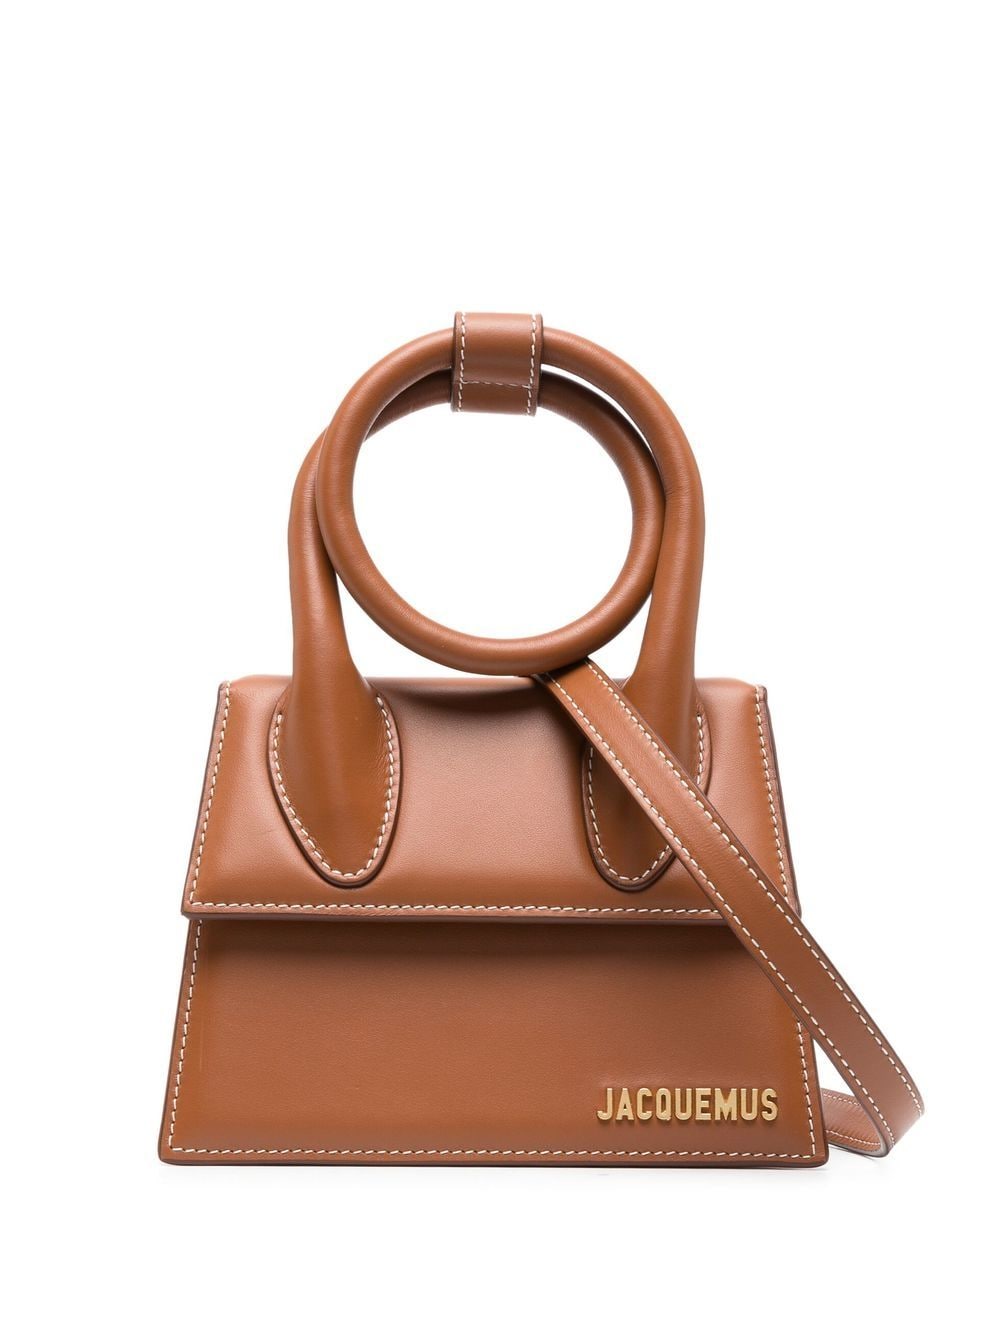 Jacquemus Le Chiquito Noeud tote bag - Brown von Jacquemus